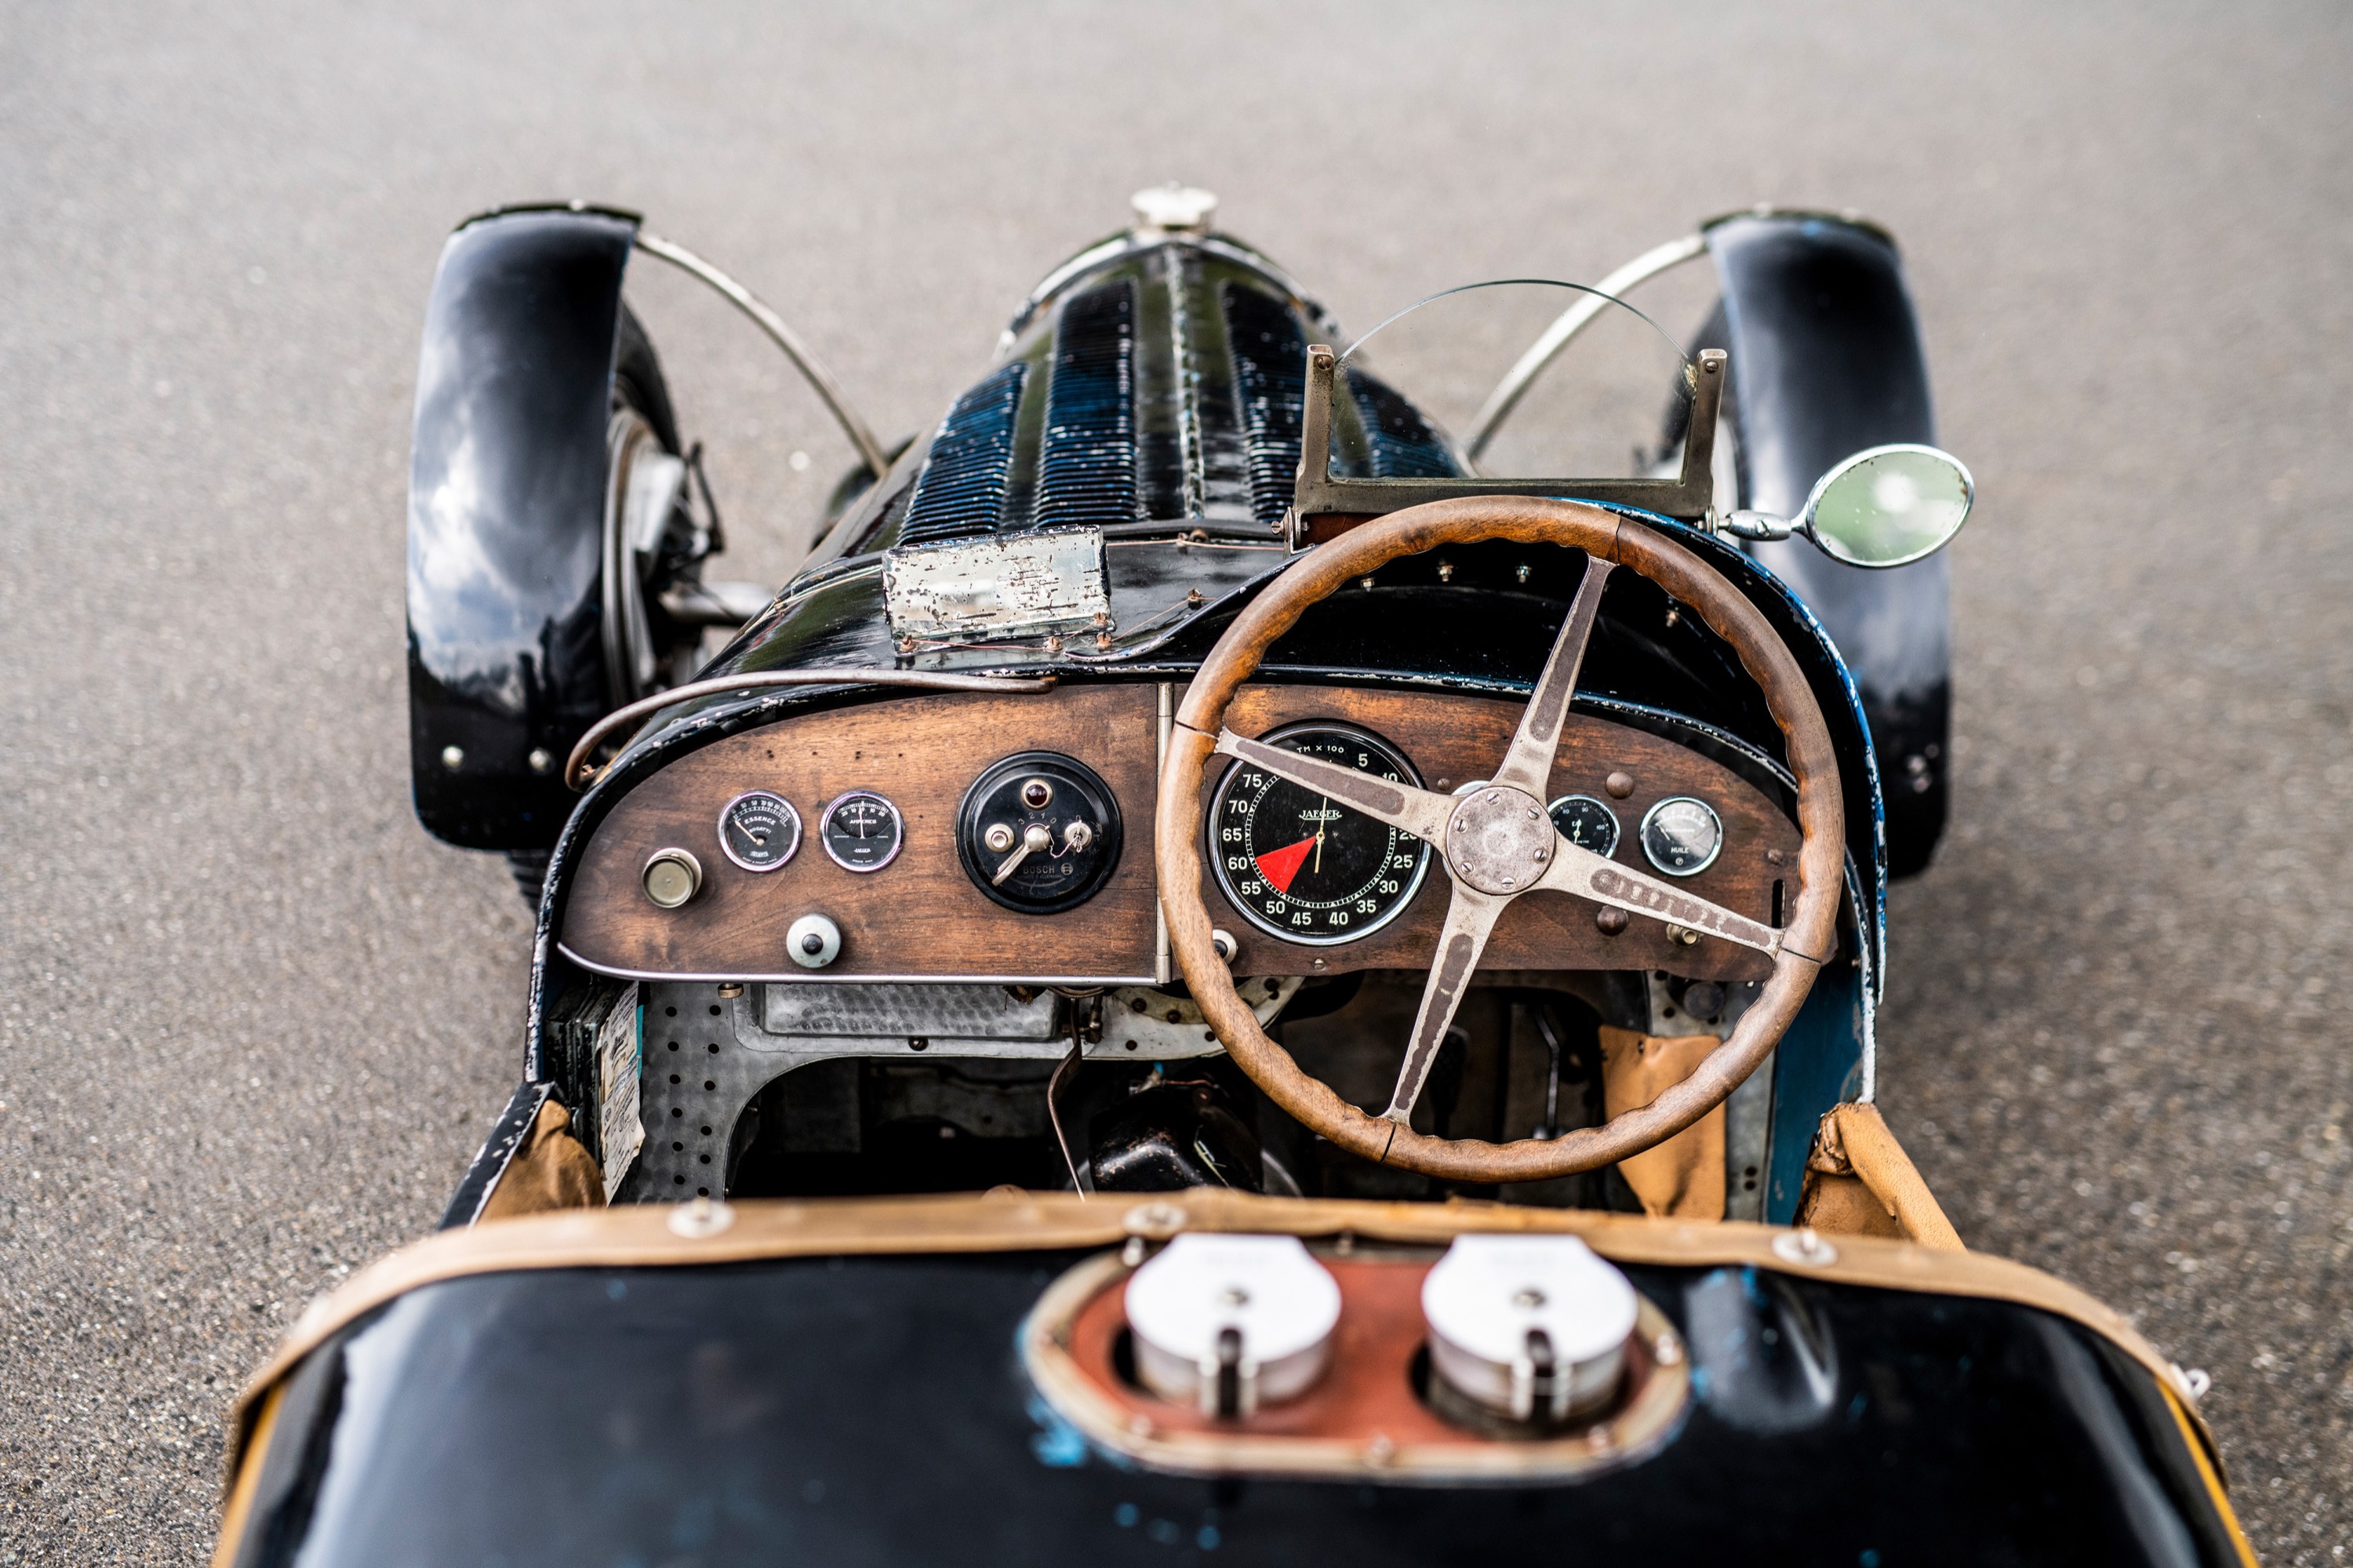 Bugatti Type 59 Sports